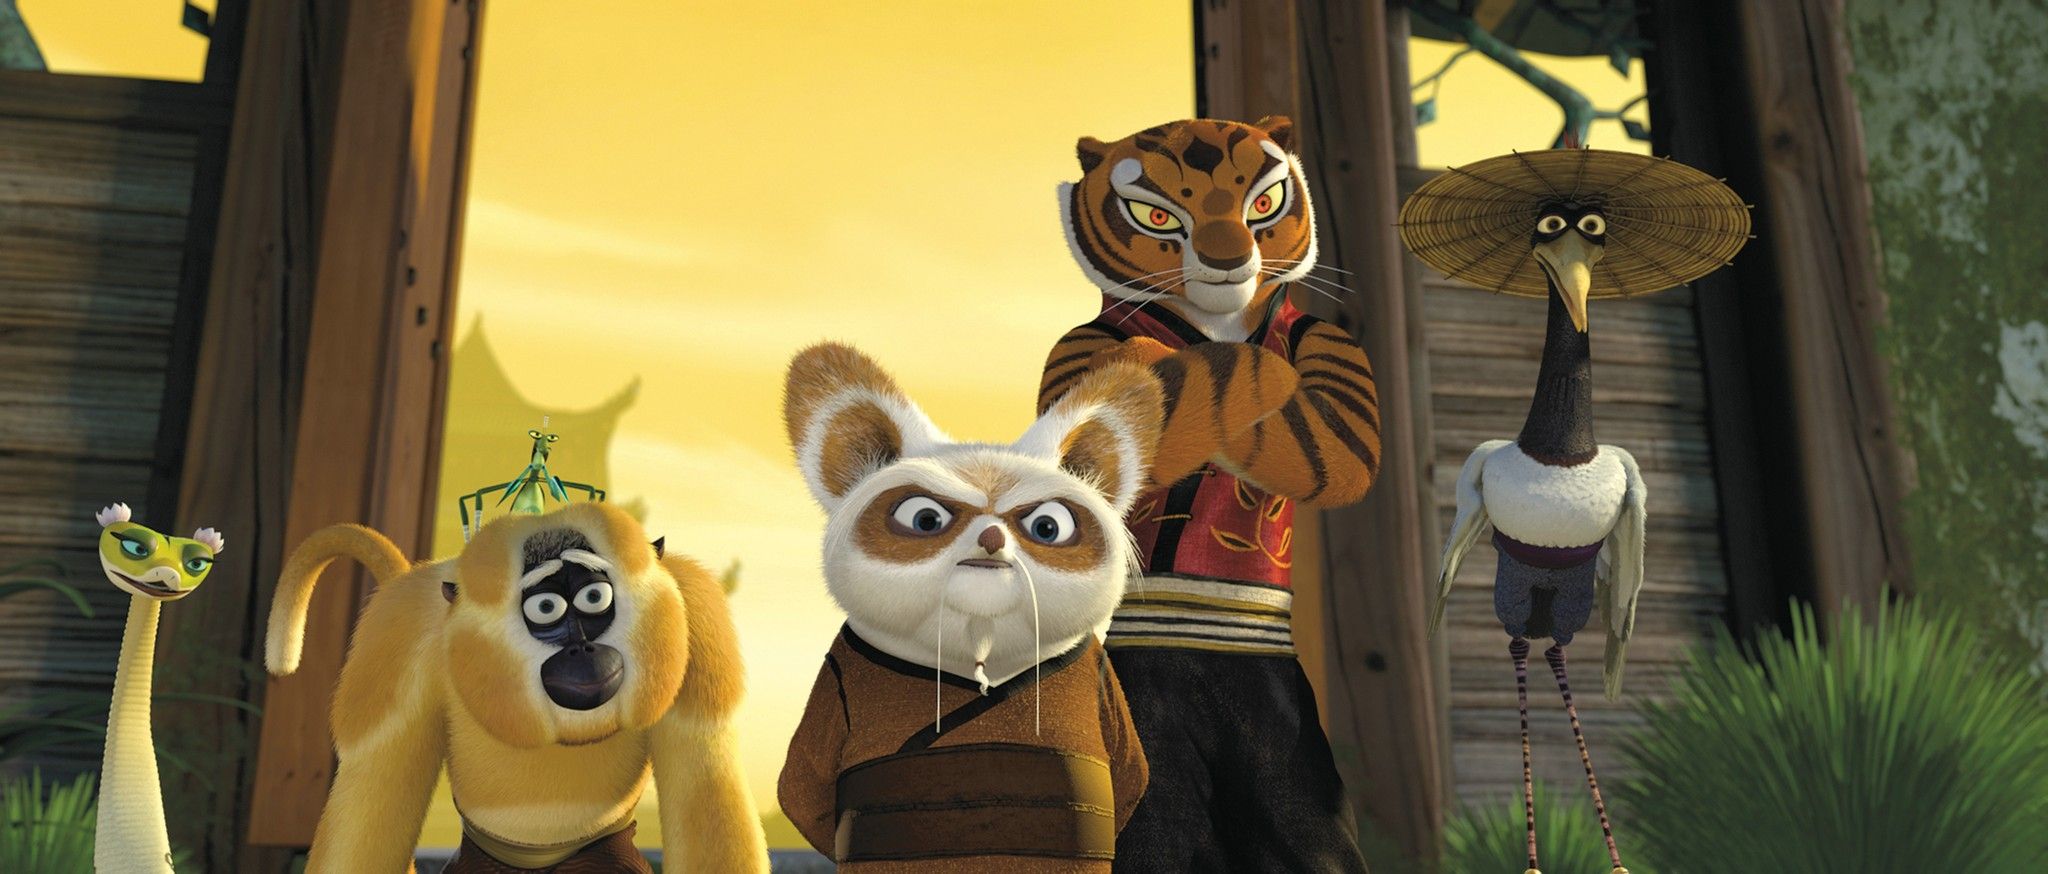 Kung Fu Panda-2008